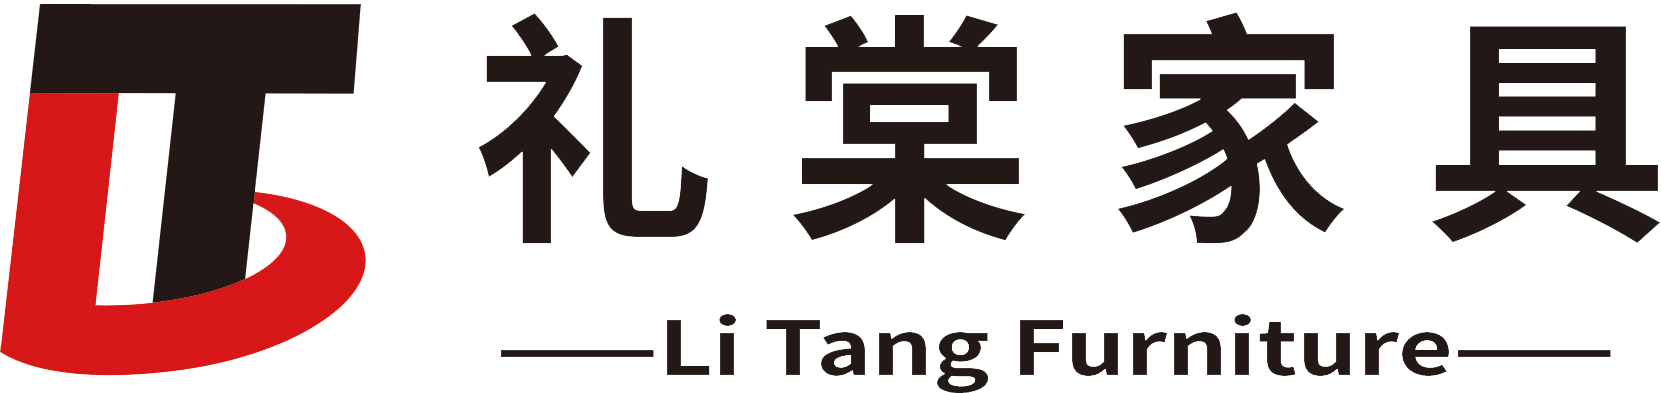 礼棠家具制造安吉有限公司logo